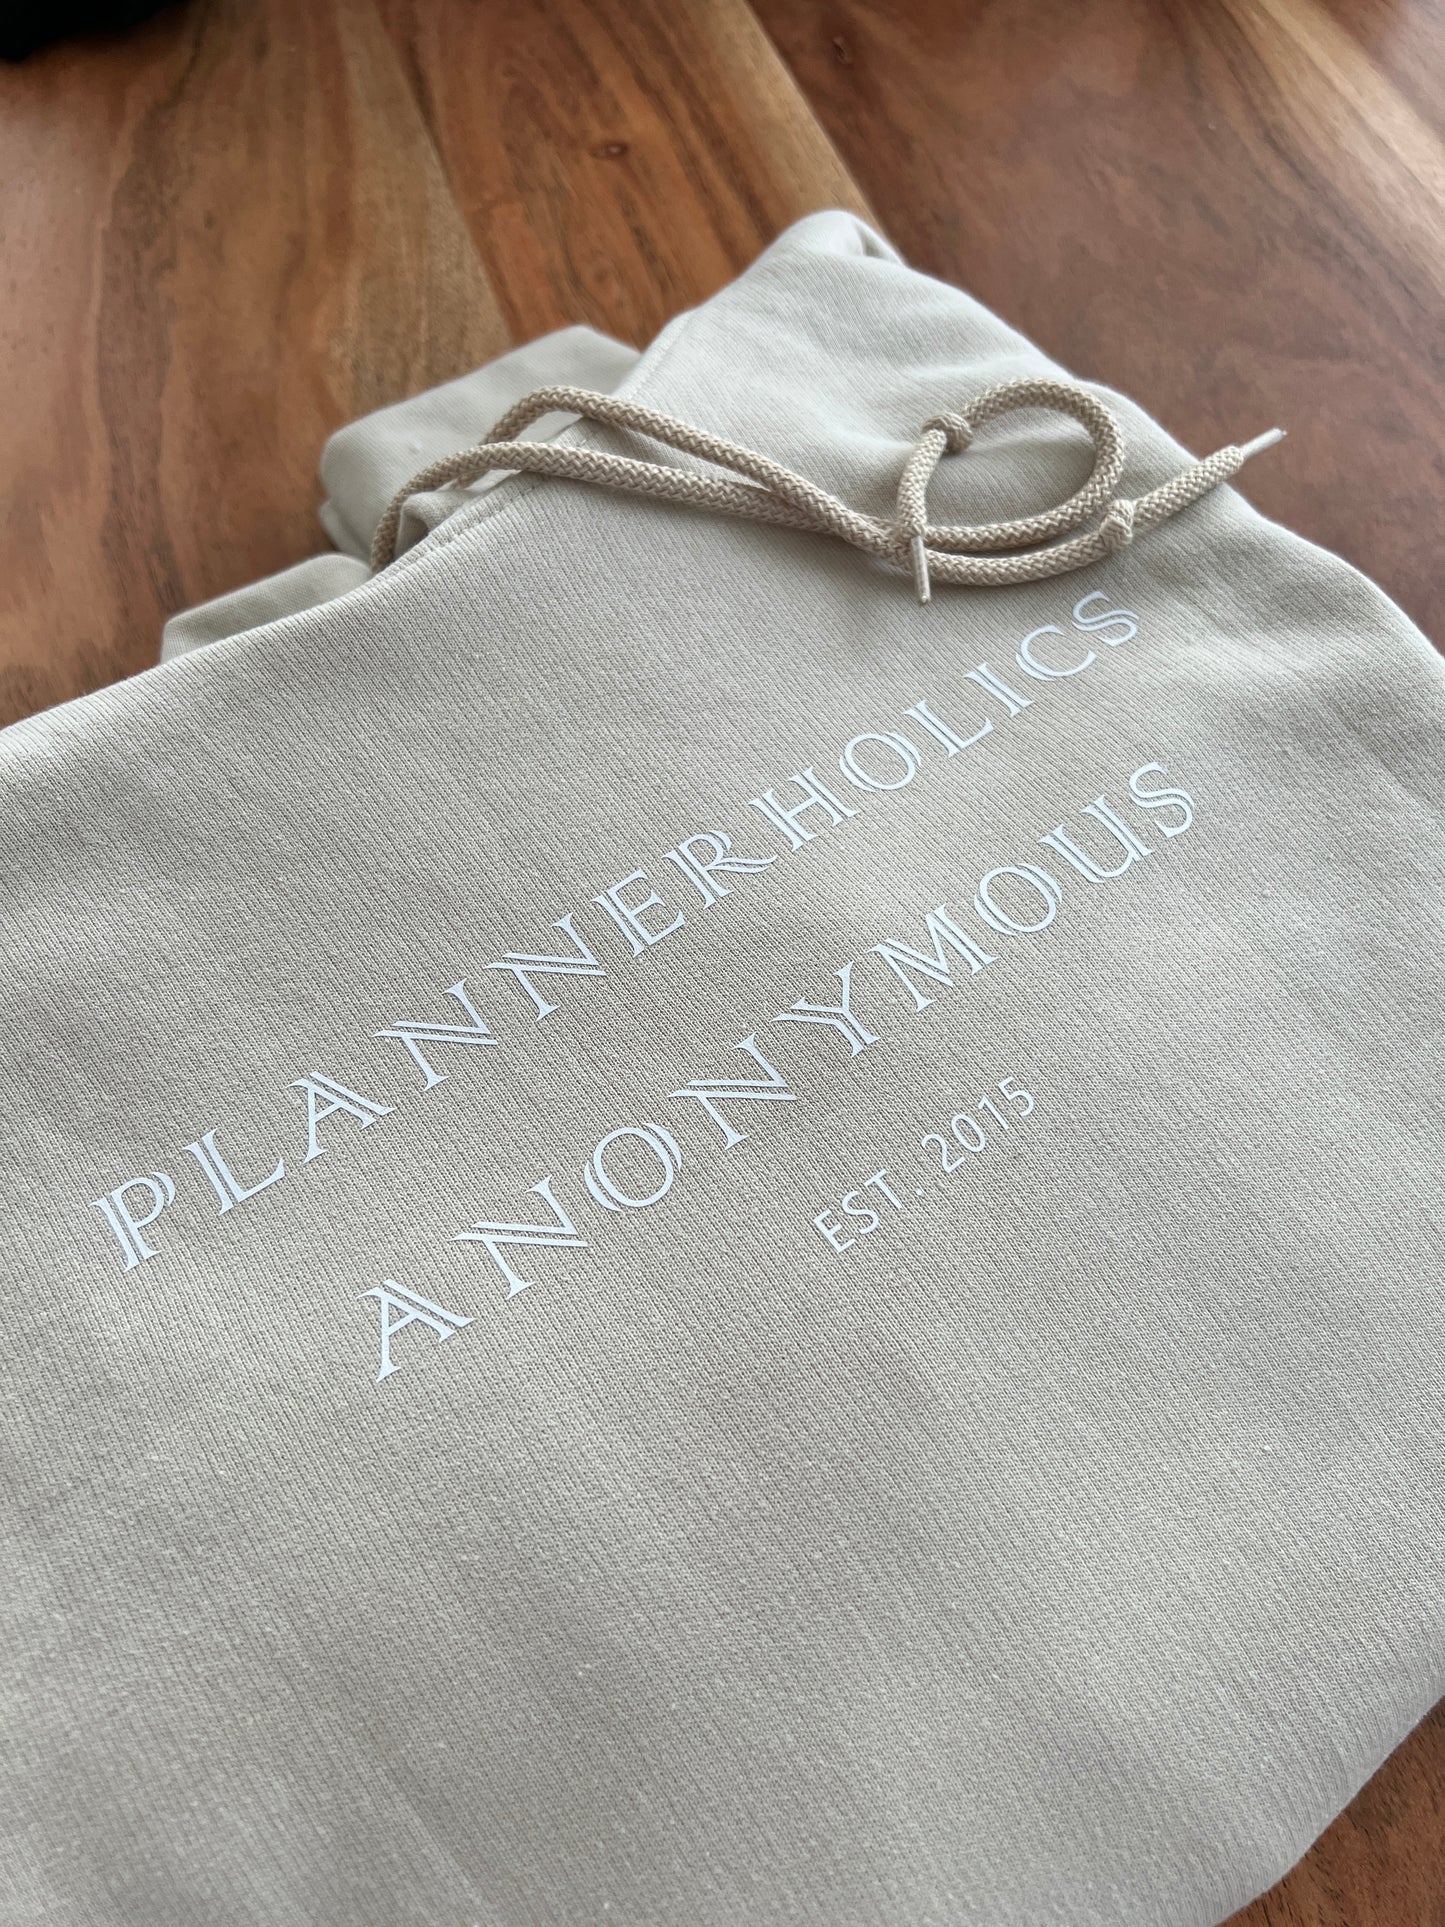 „Plannerholics Anonymous est. (benutzerdefiniertes Jahr)“ Sweatshirt/Hoodie • Wählen Sie Ihre eigenen Farben • Planner-Kollektion